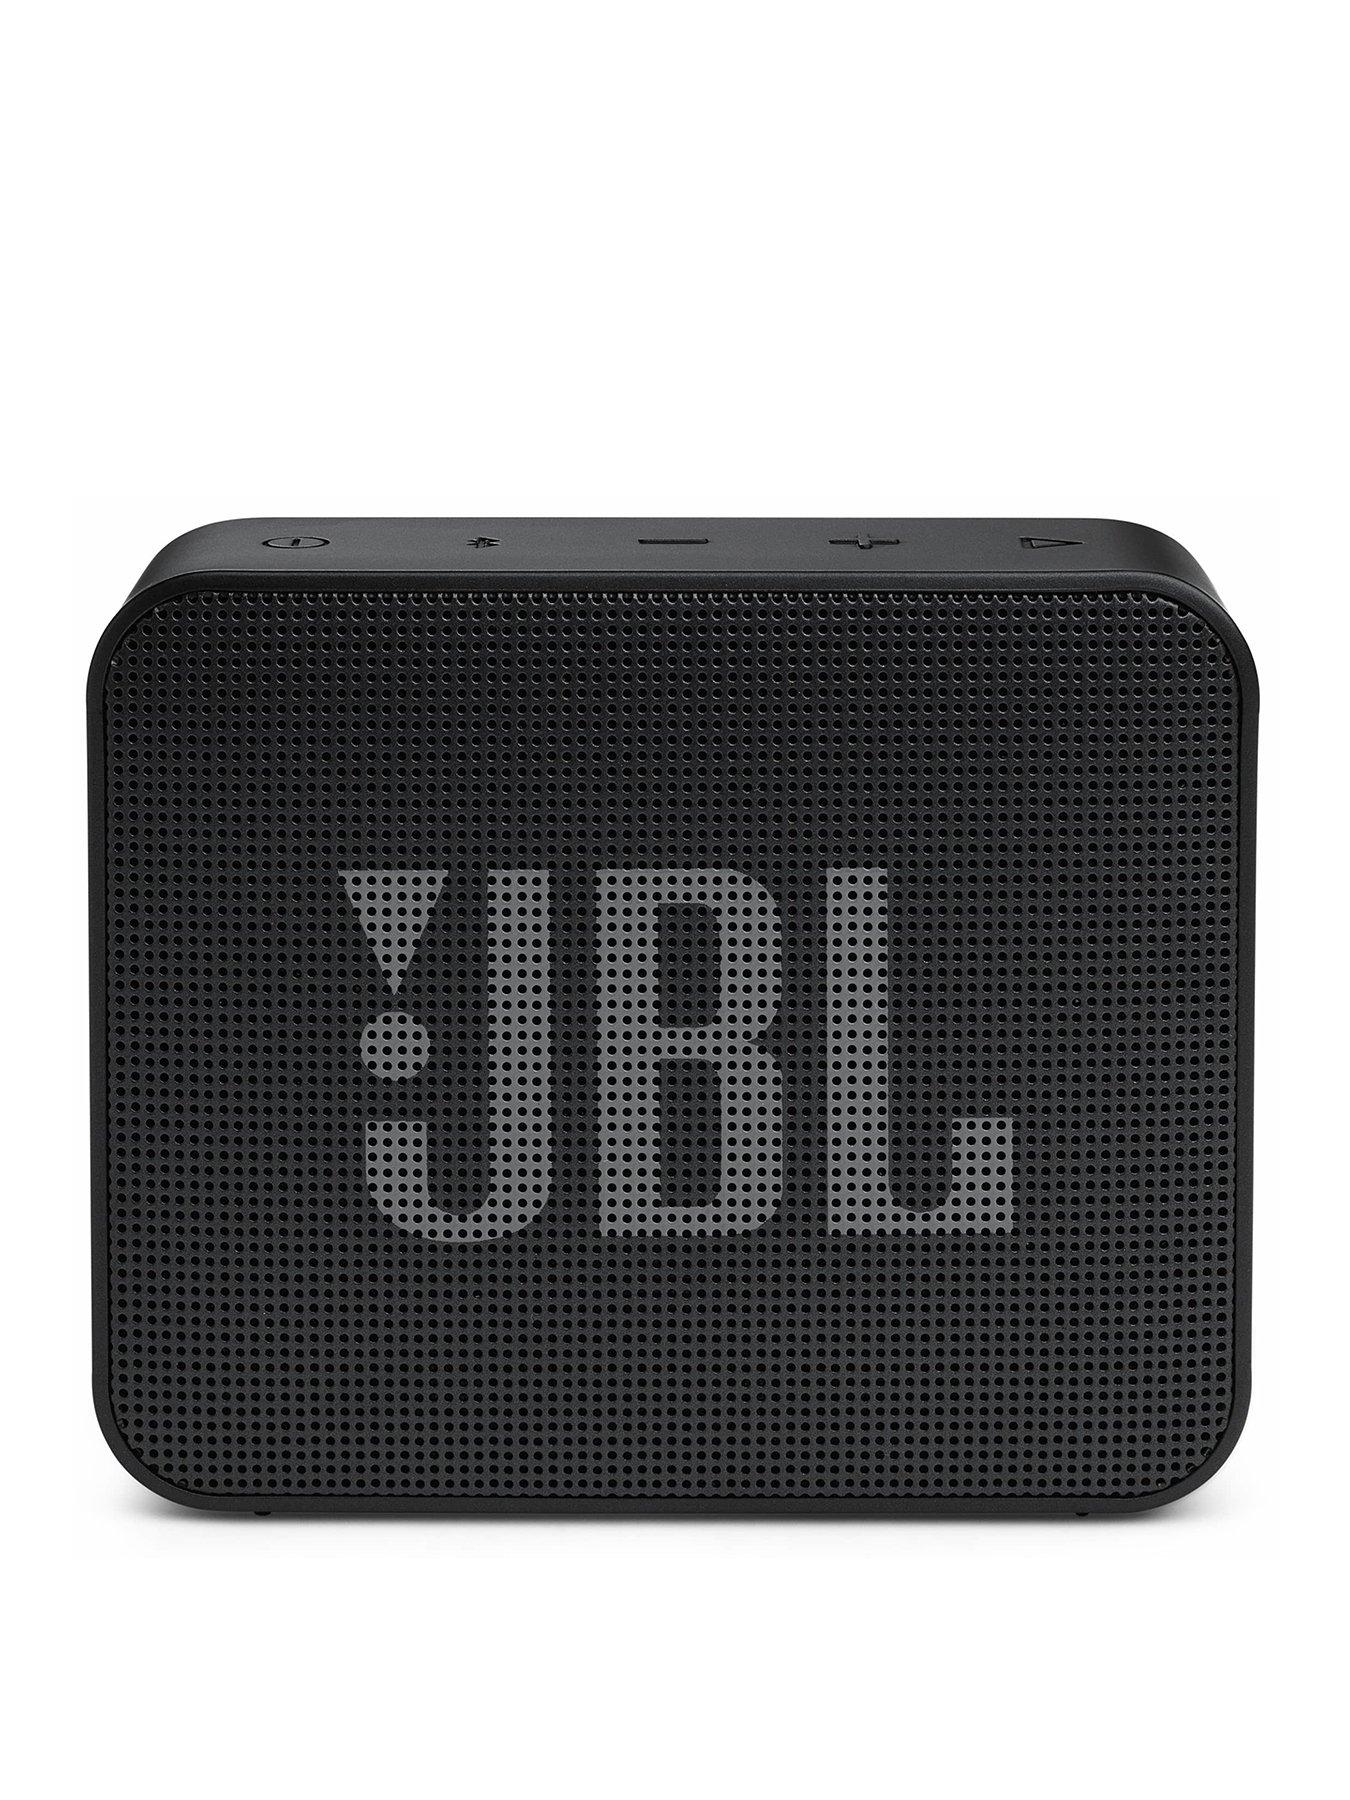 Pacifische eilanden Panter Laan JBL Go Essential Black Waterproof Portable Speaker | Very Ireland